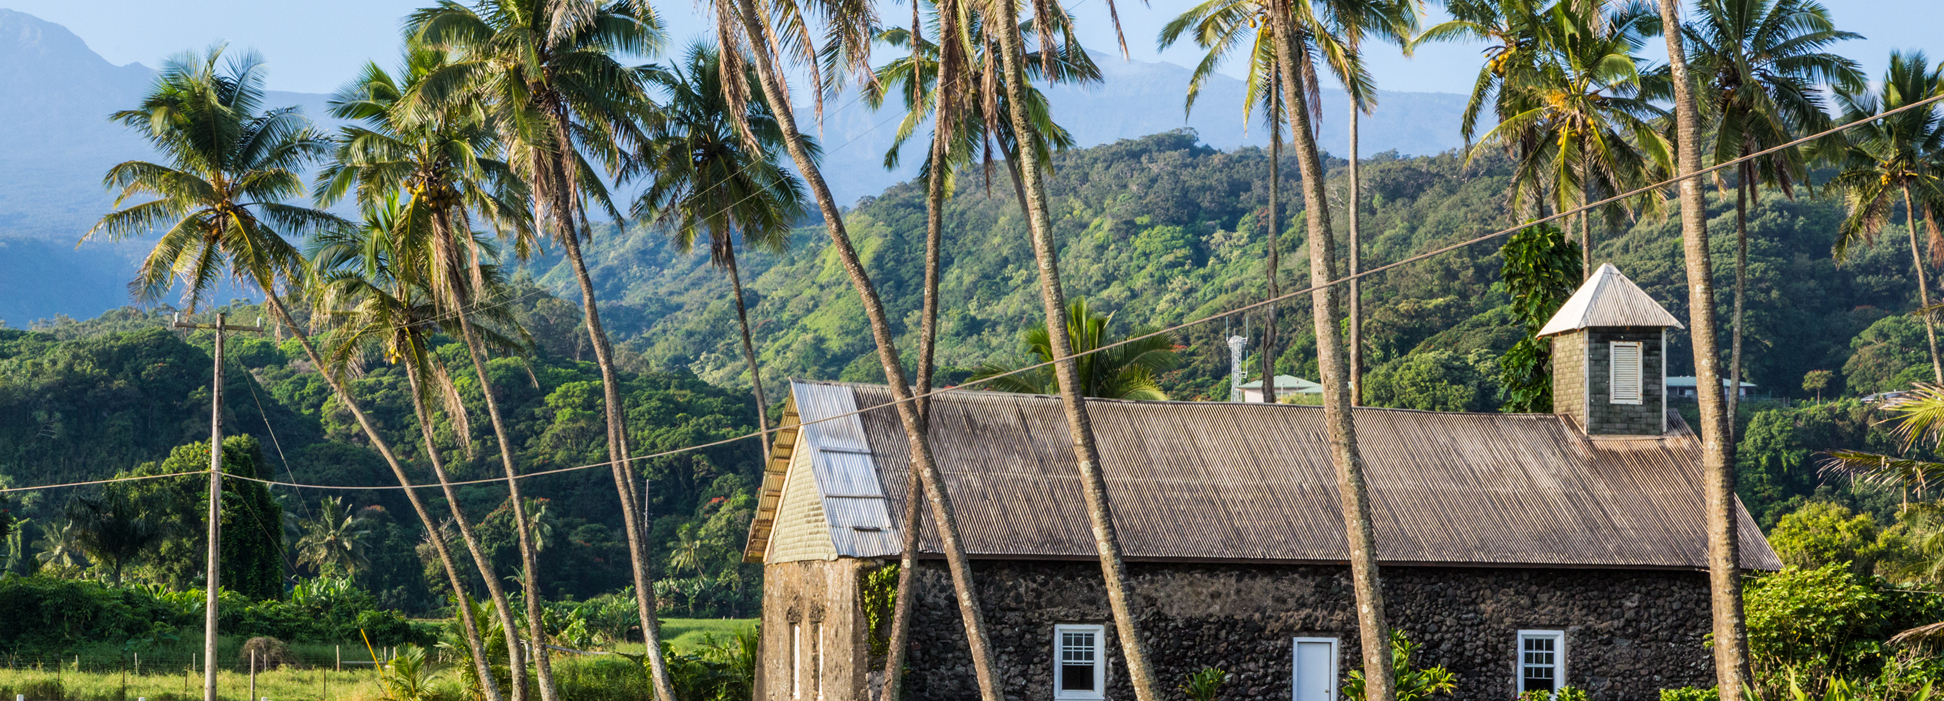 Hawaii Village Build - Maui